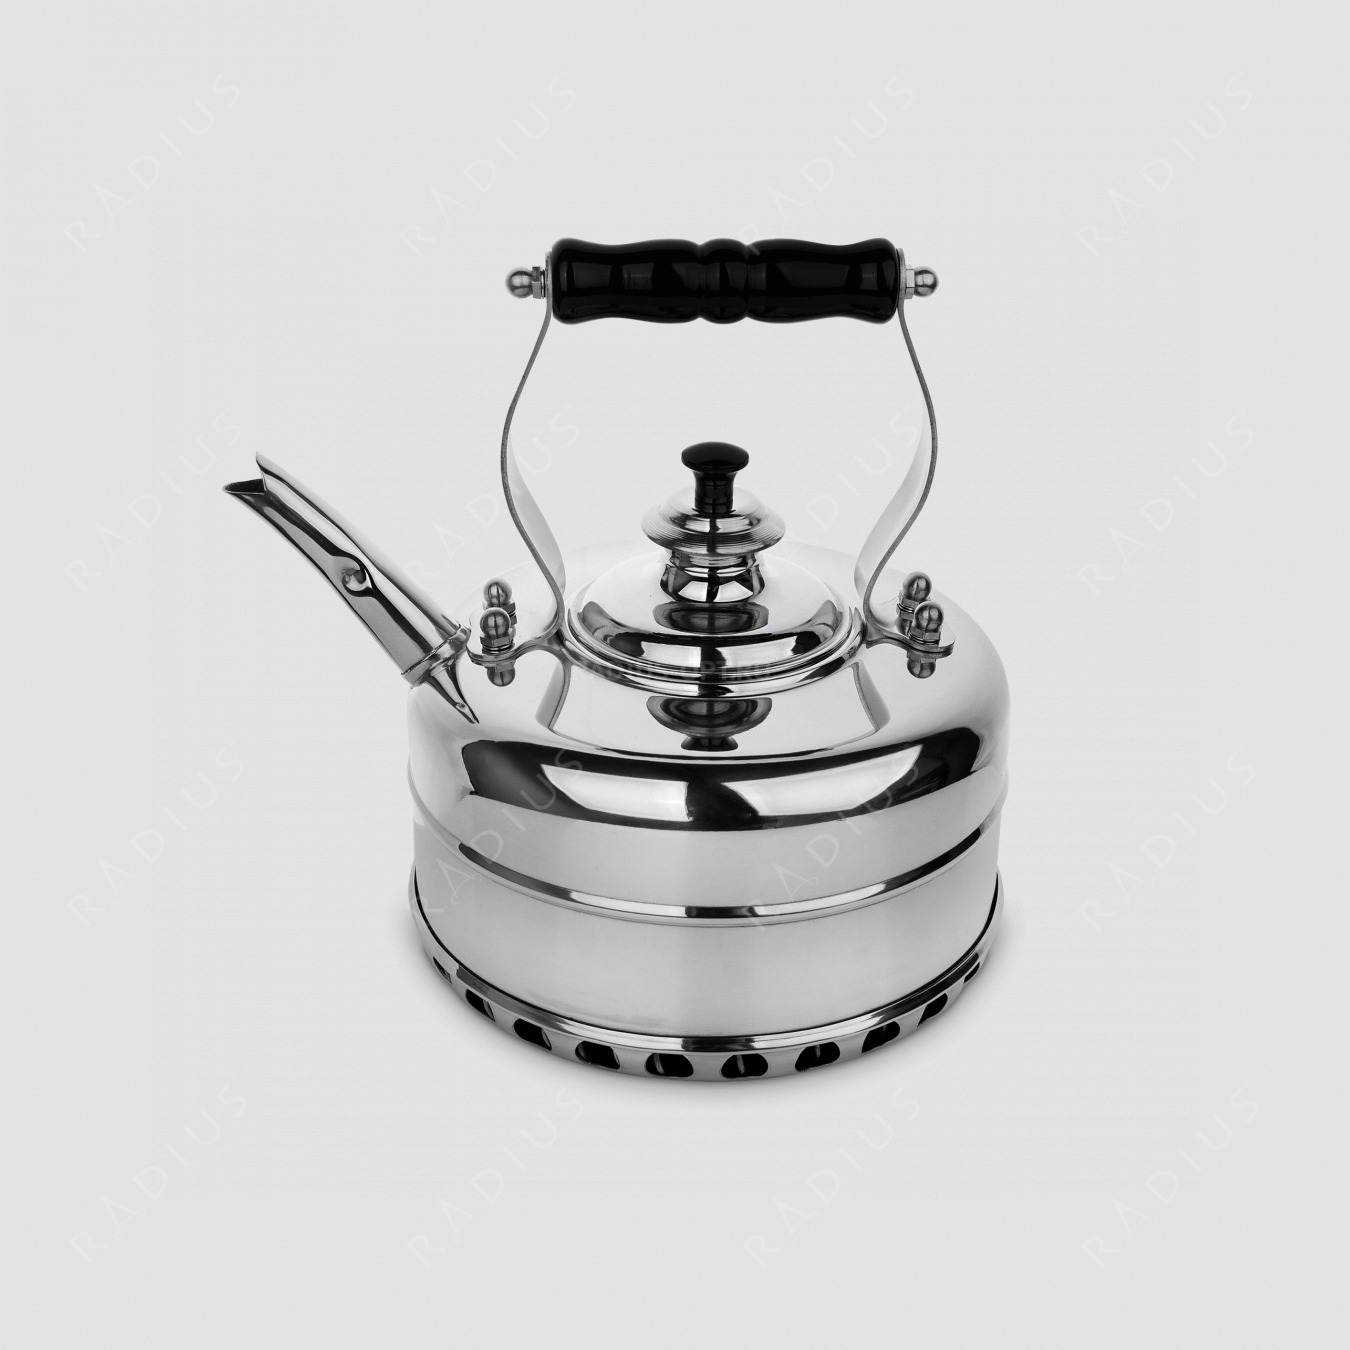 Чайник для плиты (газ) эдвардианской ручной работы, медь с хромированной отделкой, объем 1,7 л, серия Heritage, RICHMOND, Великобритания